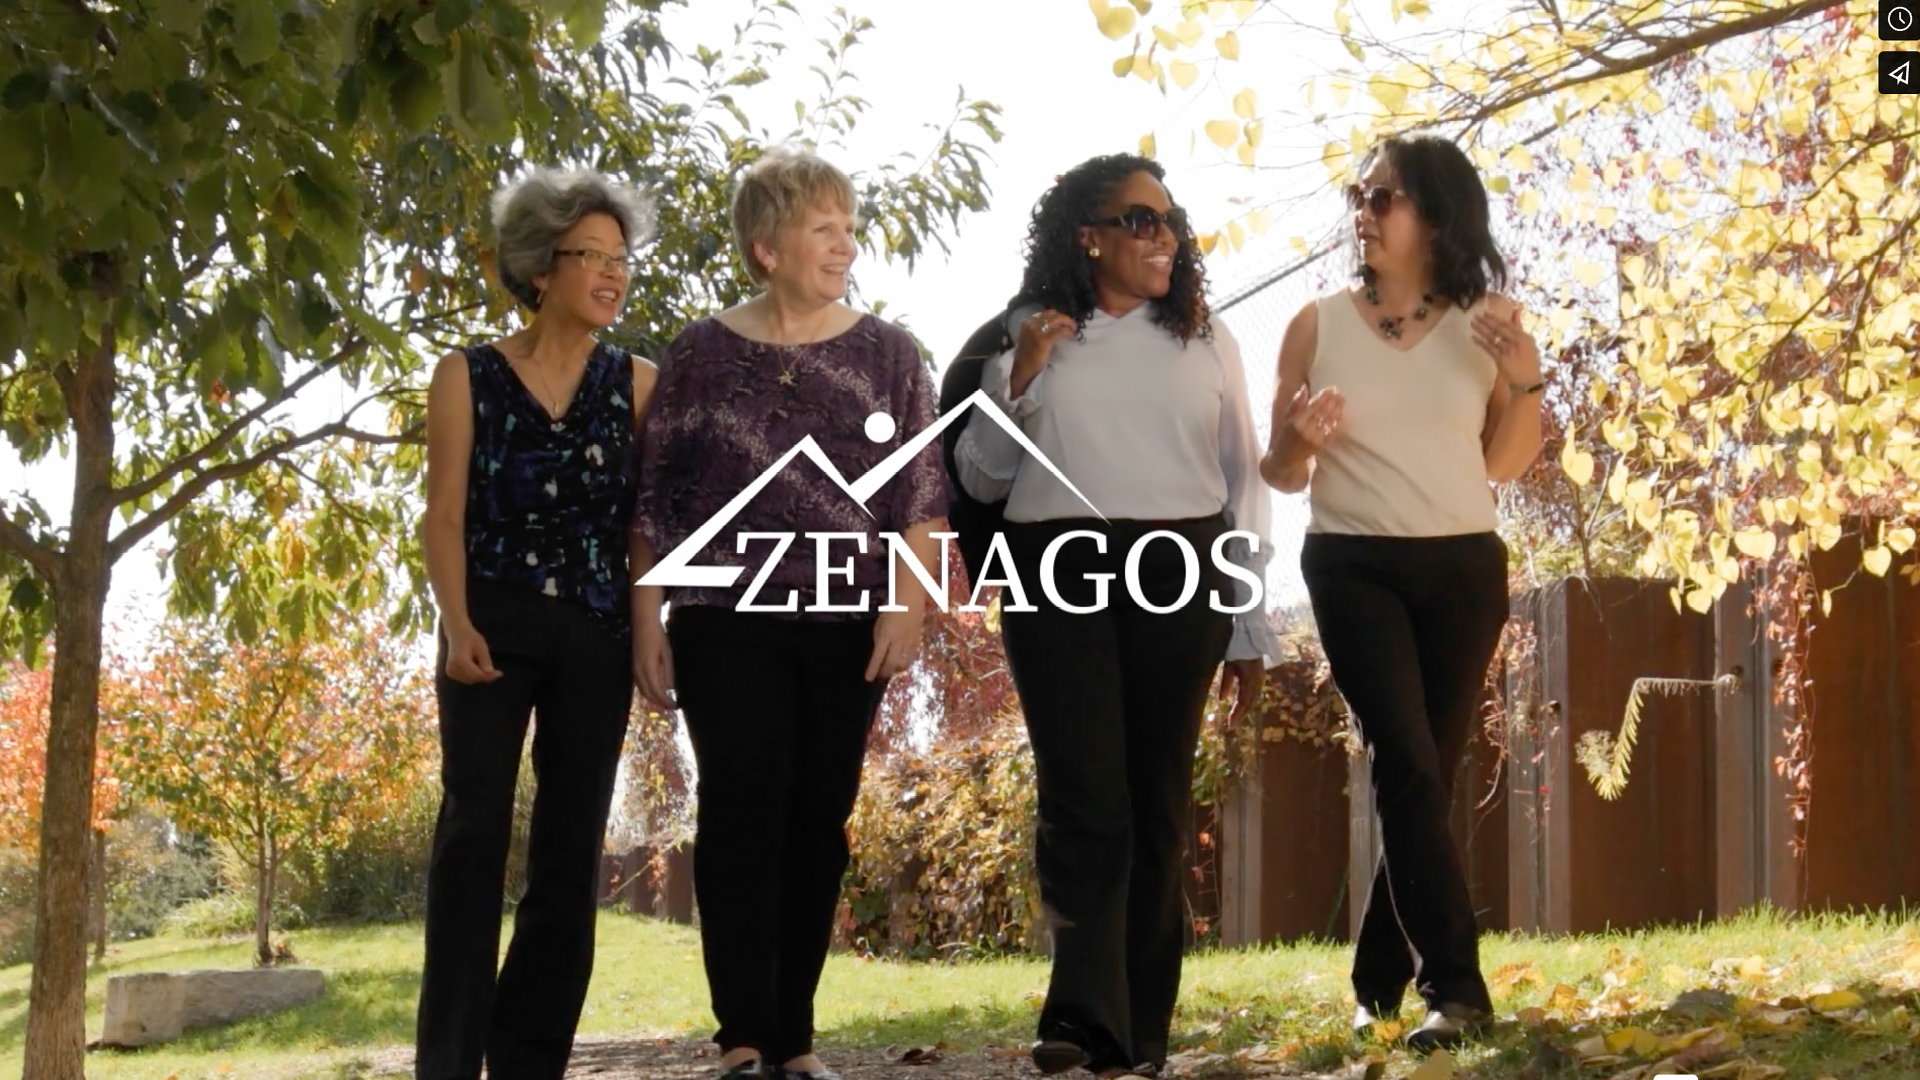 Zenagos Business Consultants